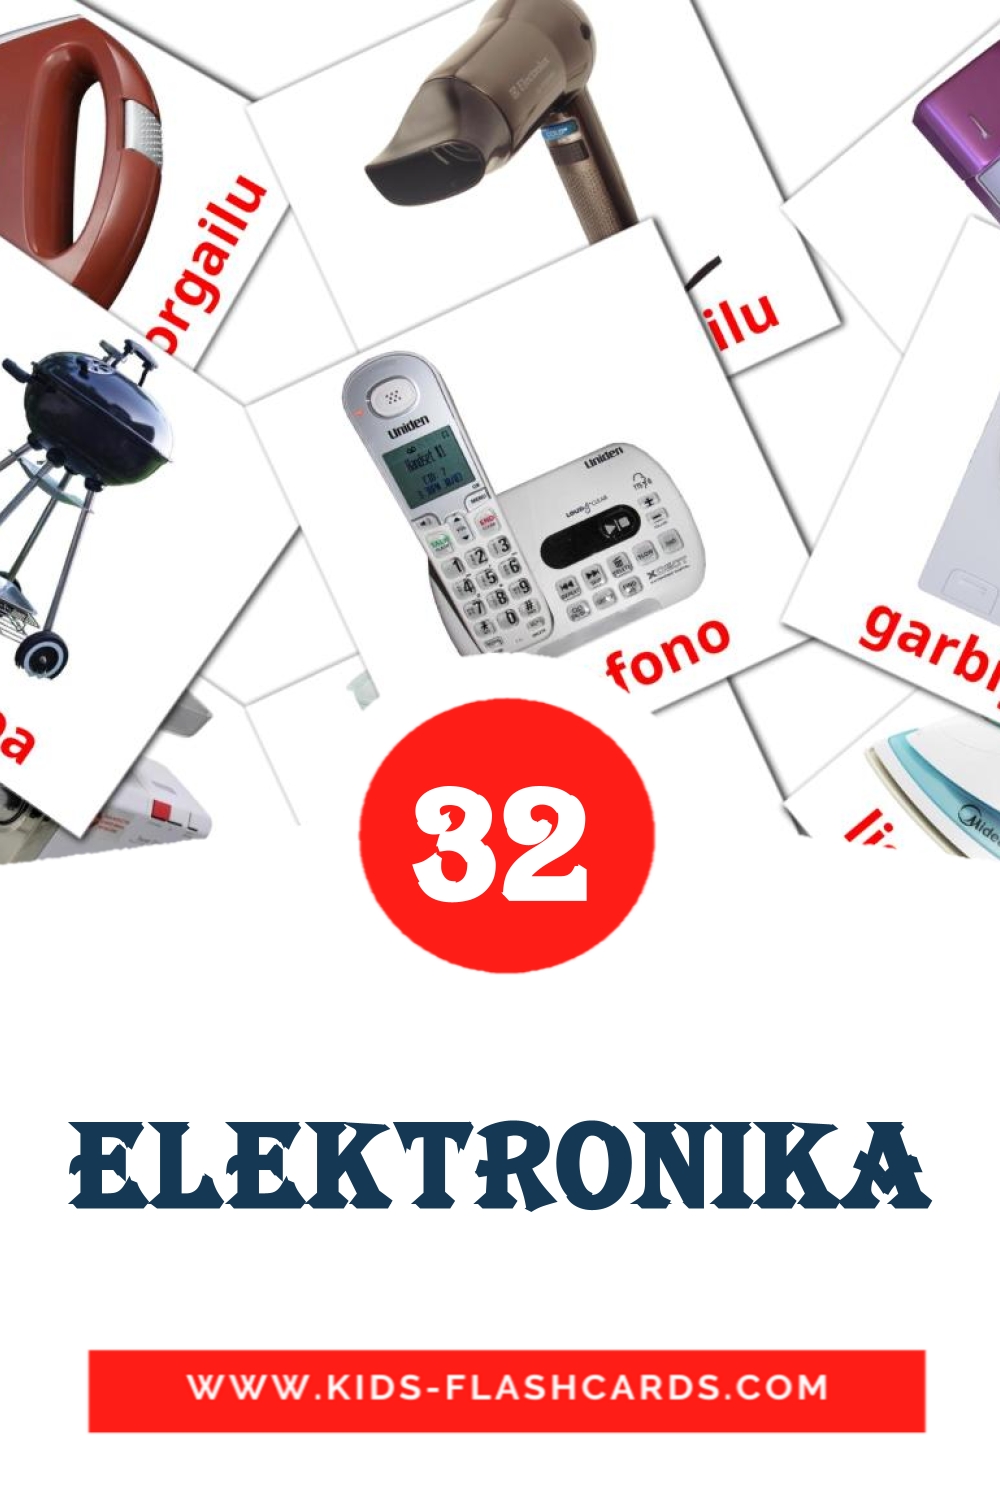 32 tarjetas didacticas de Elektronika para el jardín de infancia en euskera